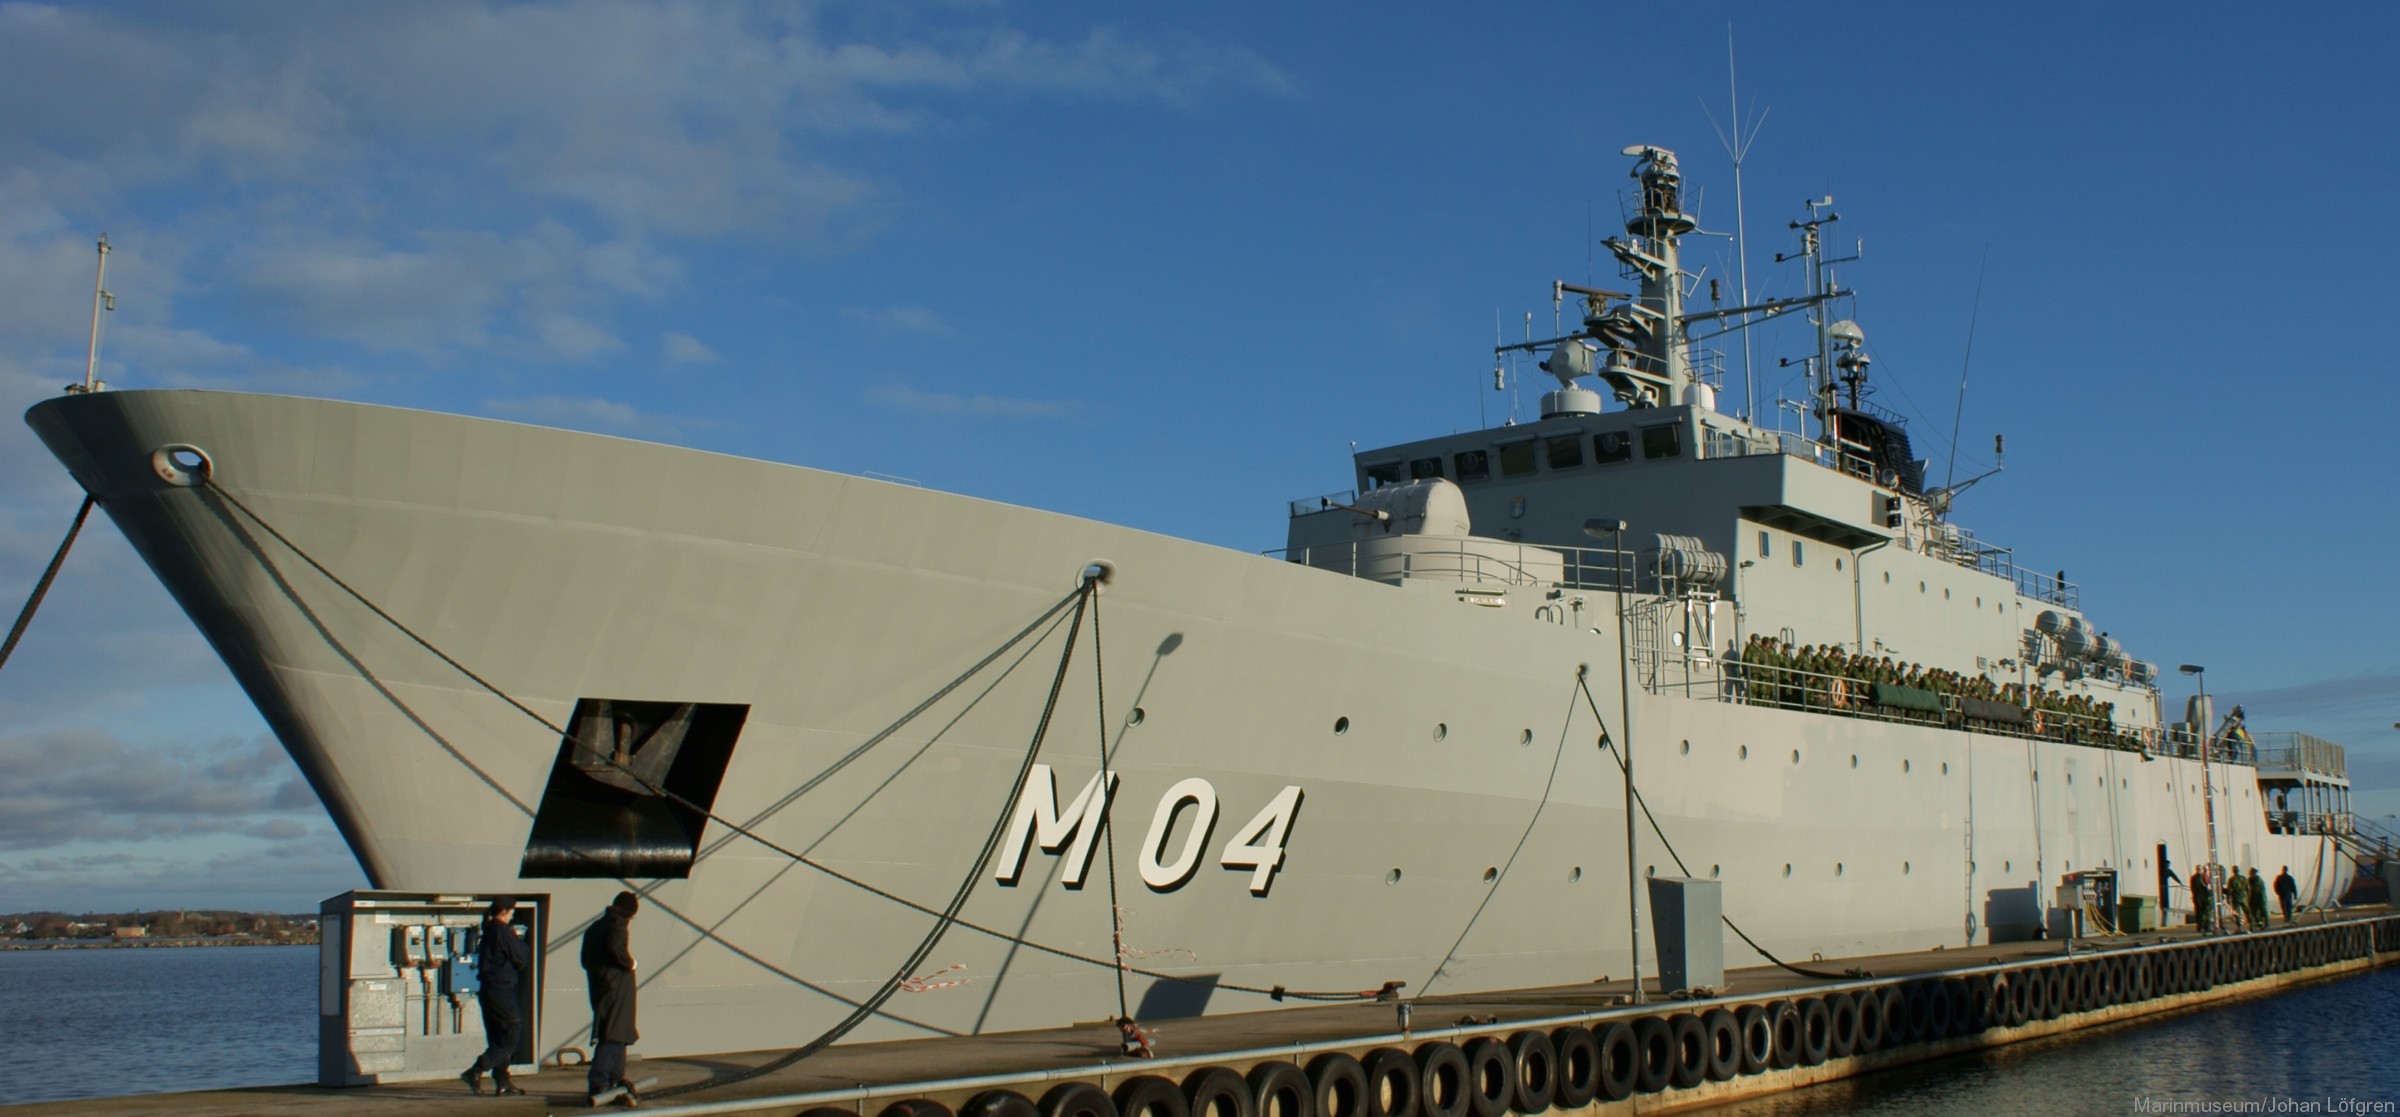 m04 hswms carlskrona hms minelayer ocean patrol vessel opv swedish navy svenska marinen försvarsmakten 17